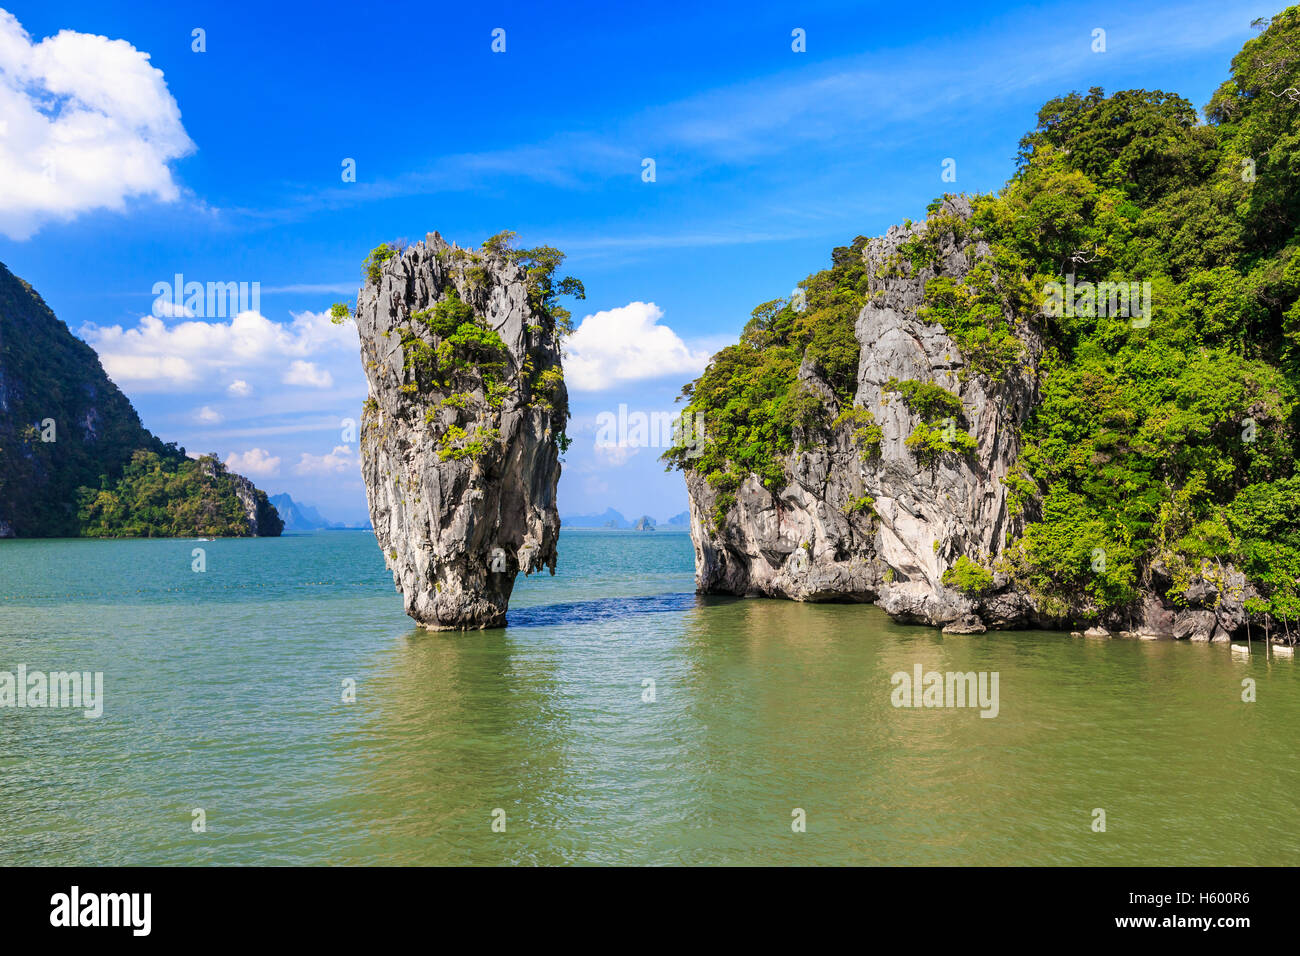 James Bond Island in Phang Nga Bay, Thailand Stock Photo